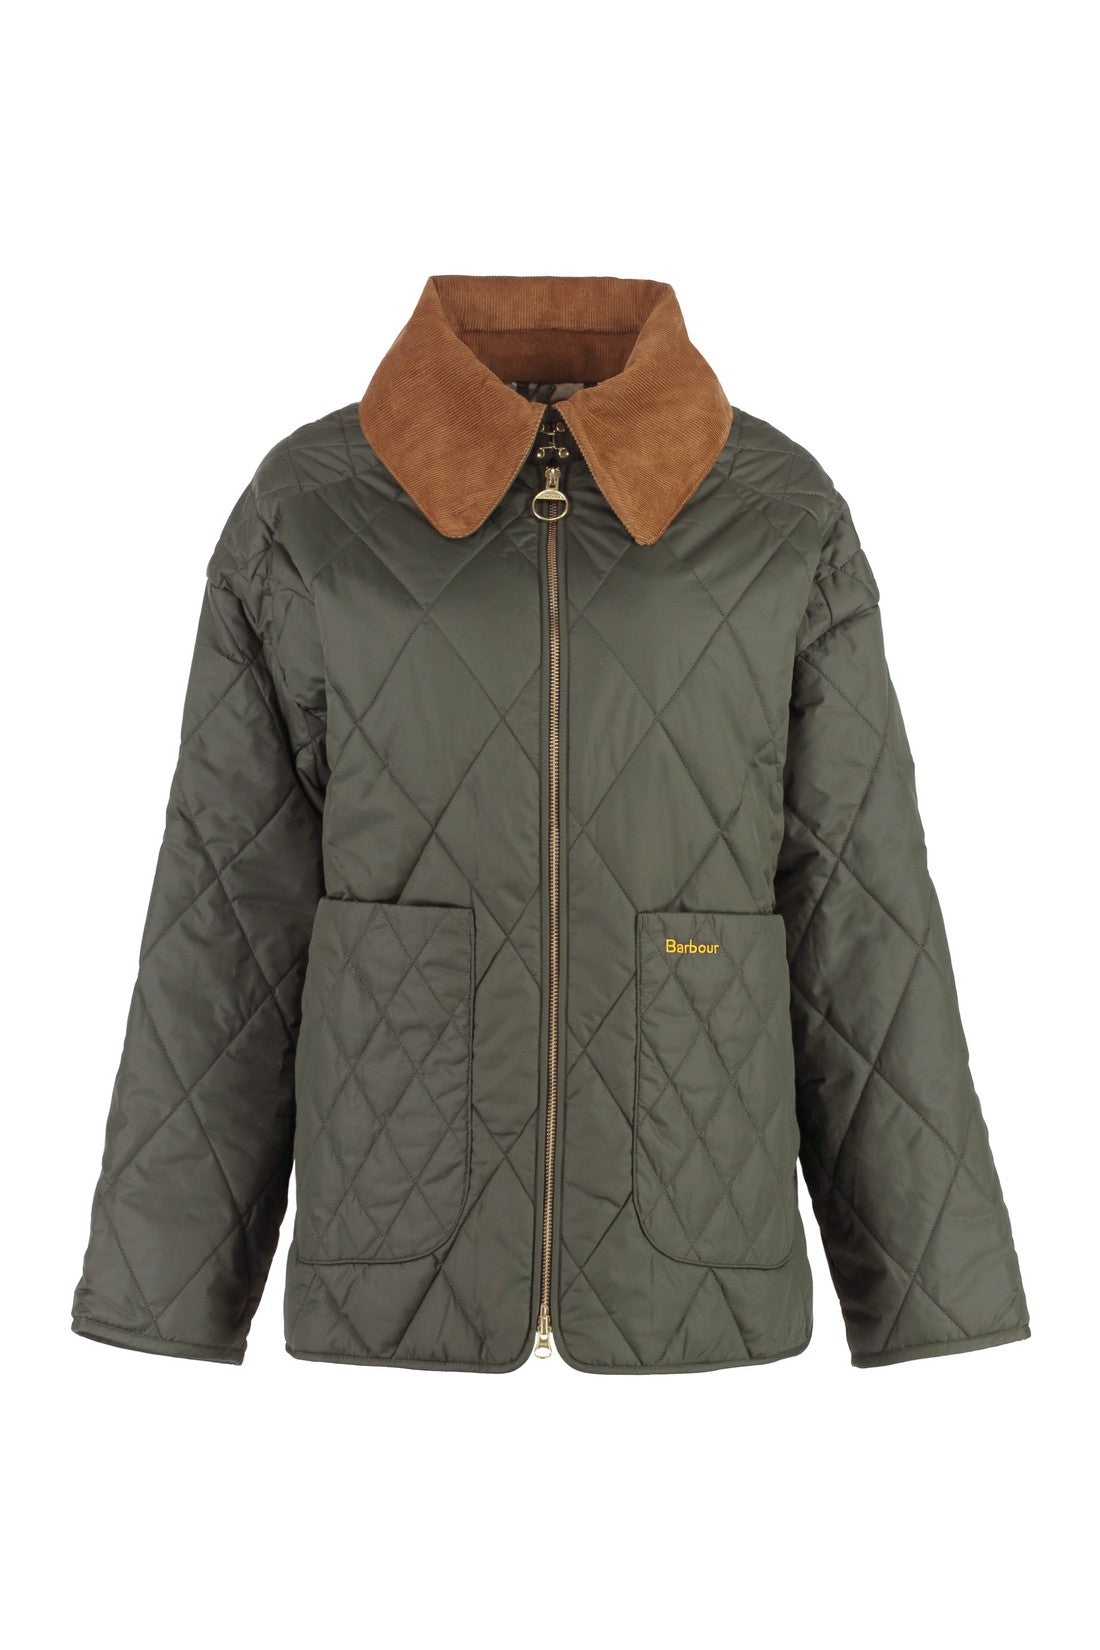 Barbour-OUTLET-SALE-Nylon jacket-ARCHIVIST